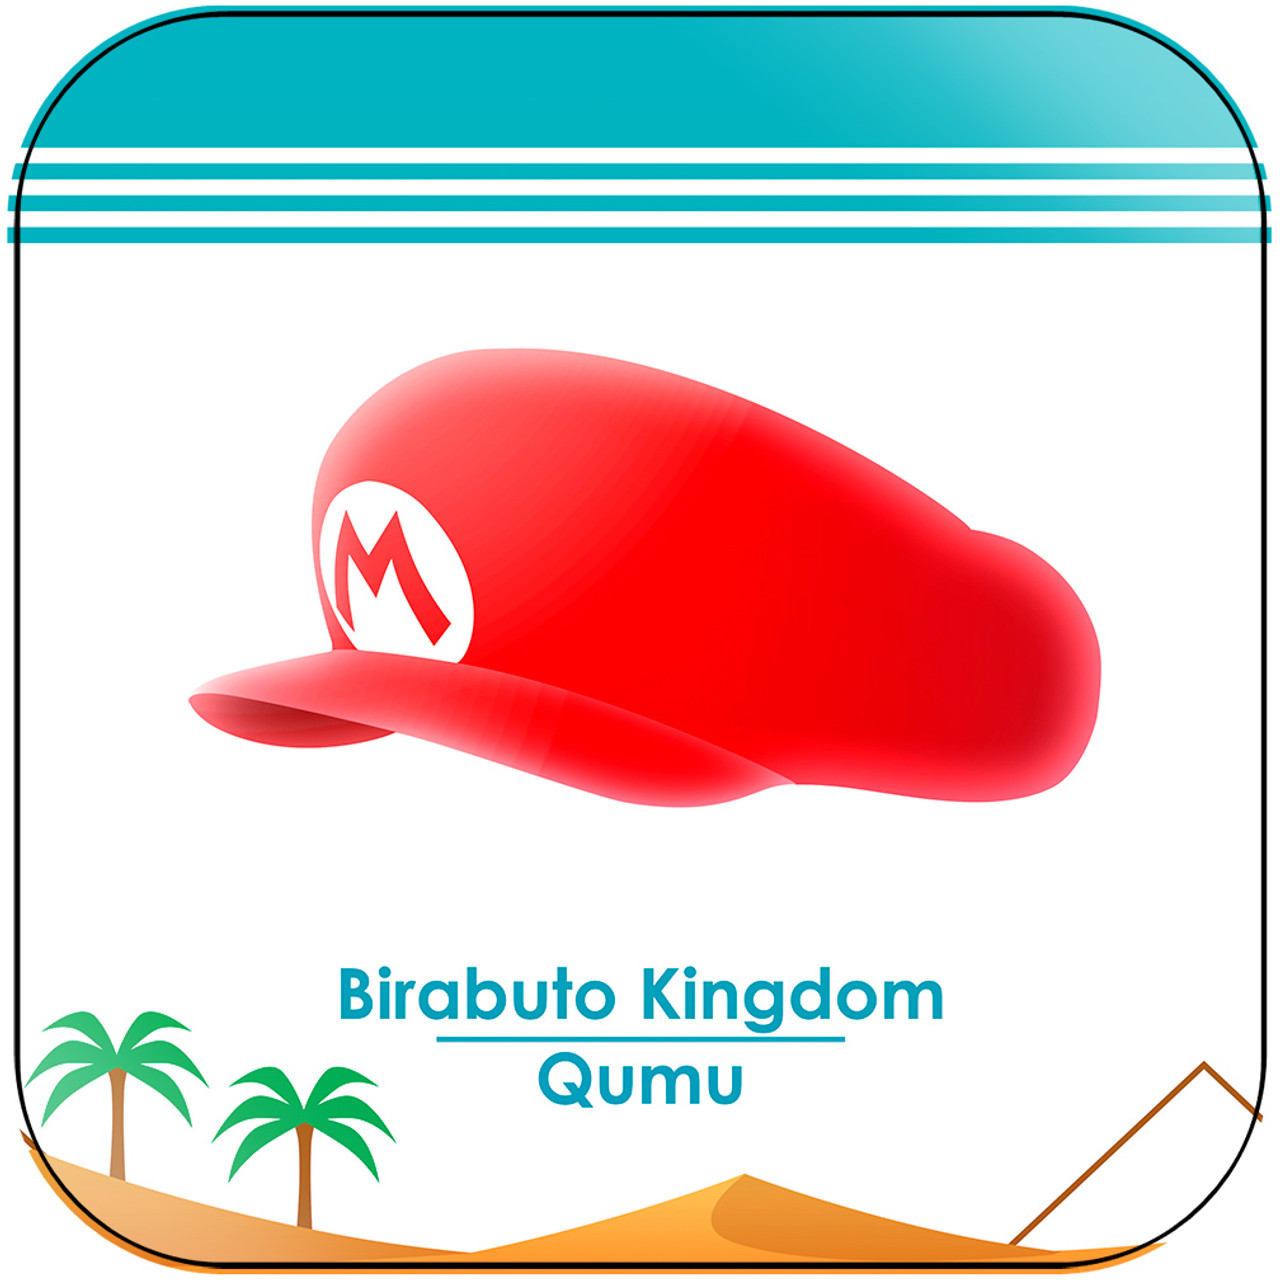 Qumu Birabuto Kingdom From Super Mario Land Album Cover Sticker Album Cover Sticker